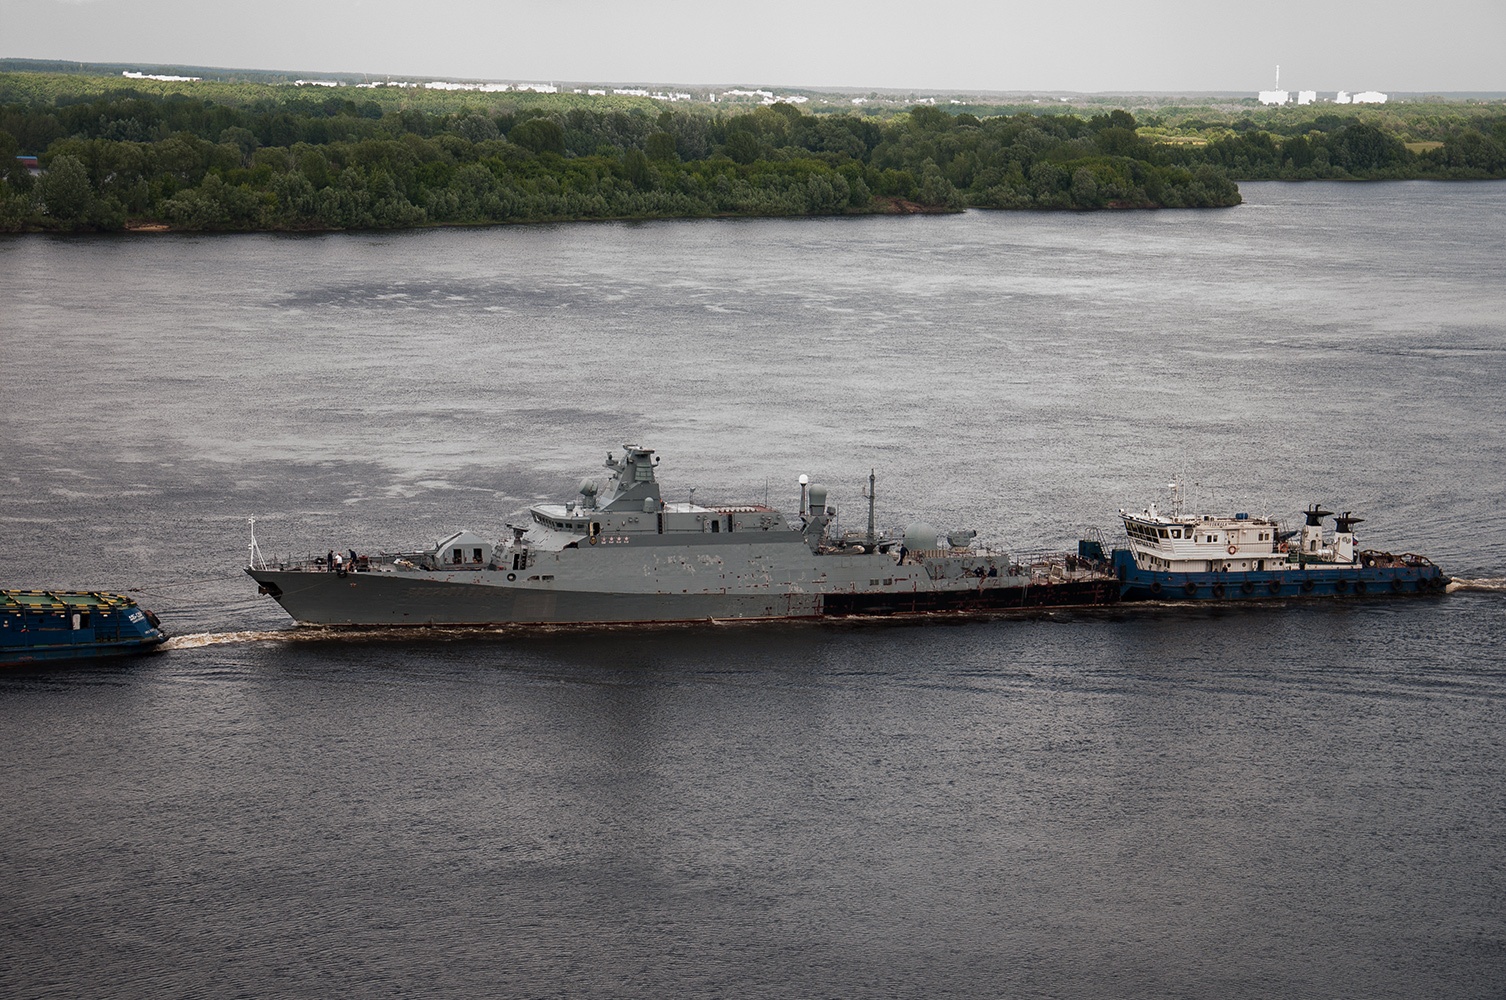 Les forces armées ukrainiennes ont abattu le navire militaire russe transportant des missiles Kalibr - il a déjà été remorqué en Russie